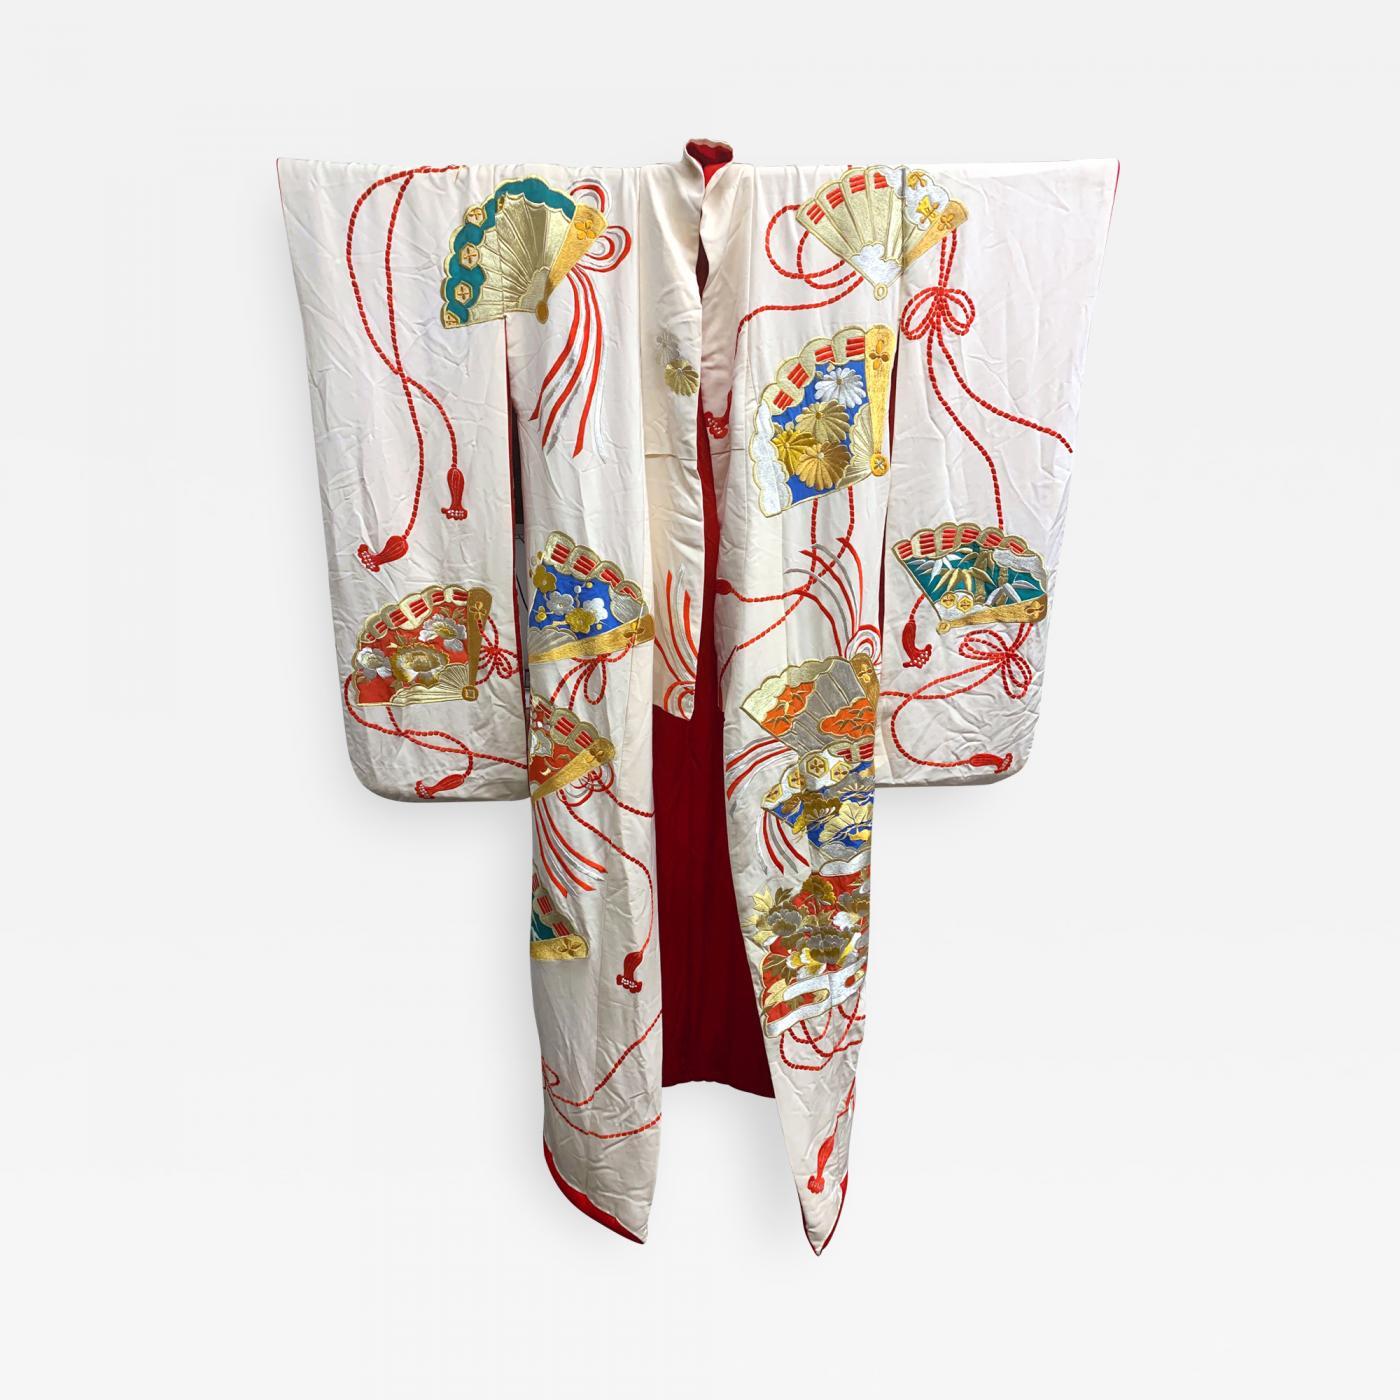 Kimono/Robe de mariage Uchikake pour cérémonie, circa 1930-1950, dans le style Art of Vintage oriental. Le vêtement nuptial en soie blanc crème présente une broderie élaborée et complexe de motifs d'éventails très décorés entourés de rubans et de